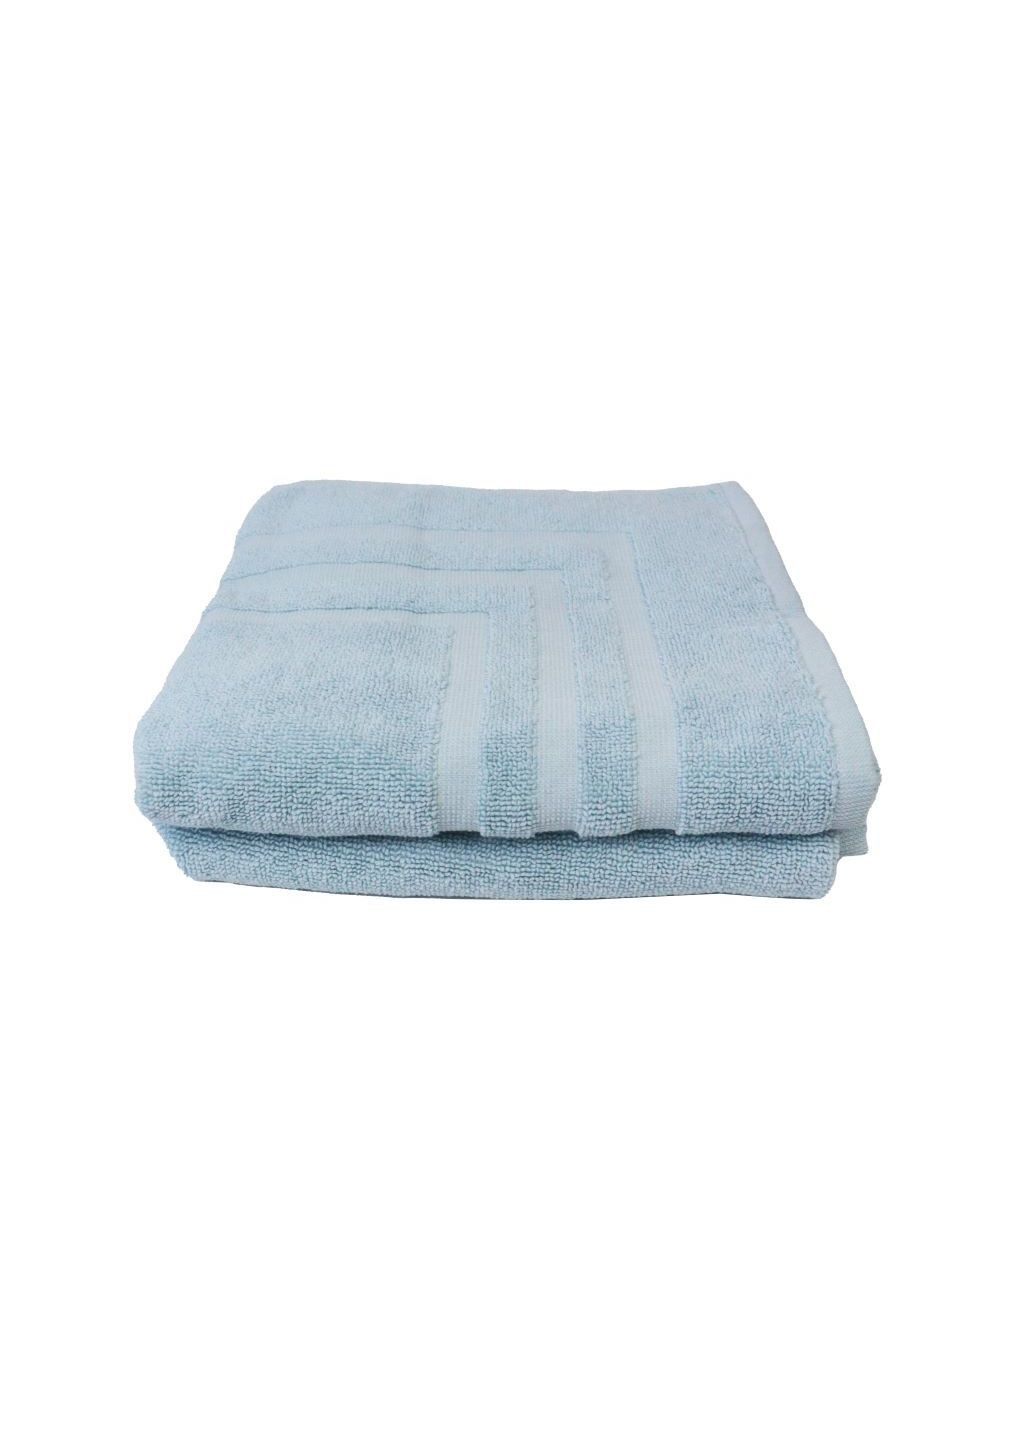 Home Ideas набор полотенец-ковриков махровых 2 шт 50х75 см голубые голубой производство - Германия